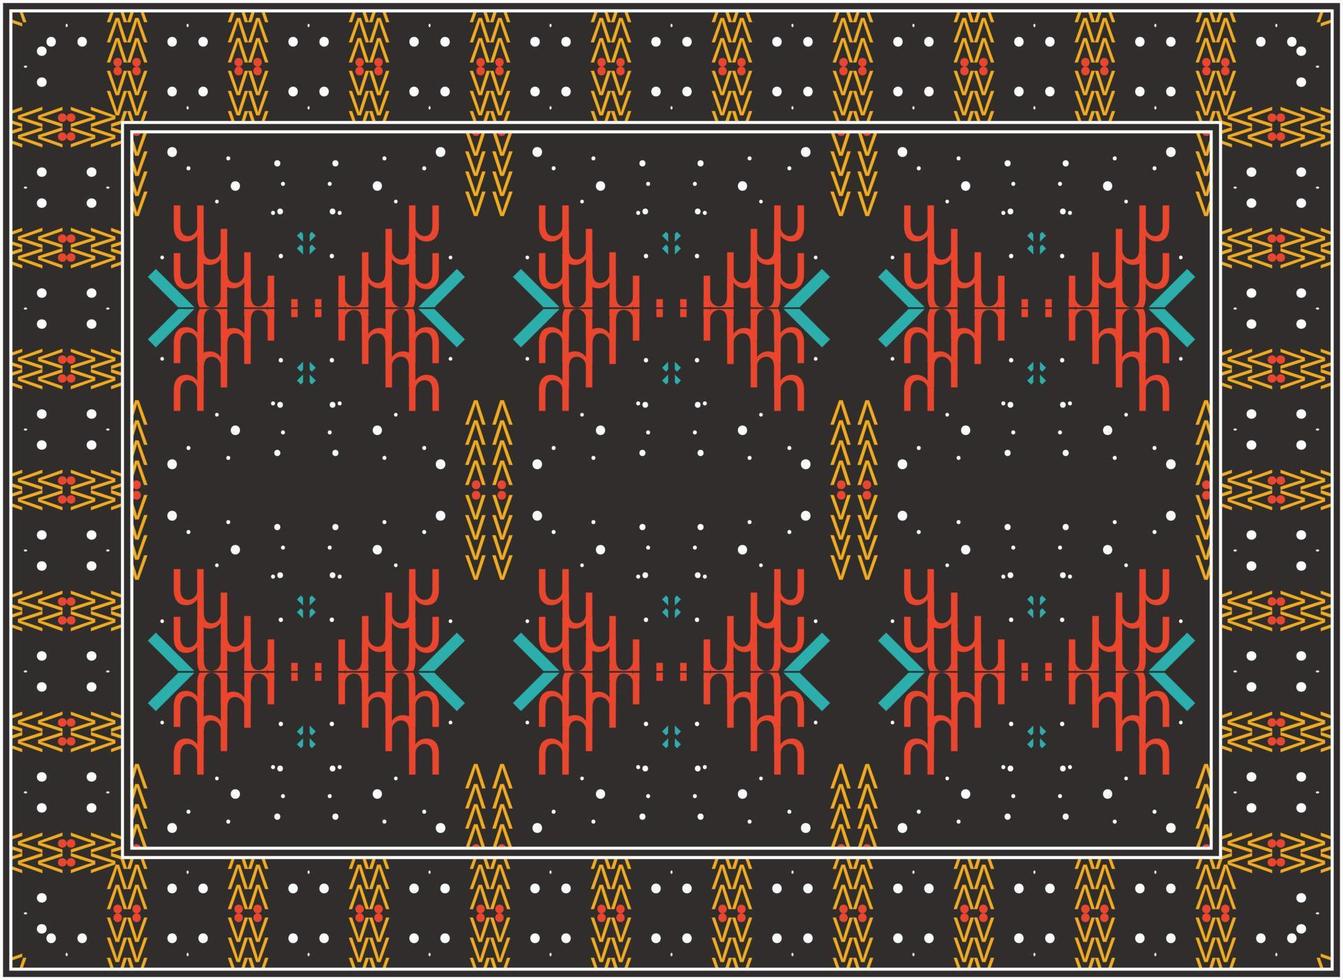 Perzisch tapijt patronen, Afrikaanse motief modern Perzisch tapijt, Afrikaanse etnisch aztec stijl ontwerp voor afdrukken kleding stof tapijten, handdoeken, zakdoeken, sjaals tapijt, vector